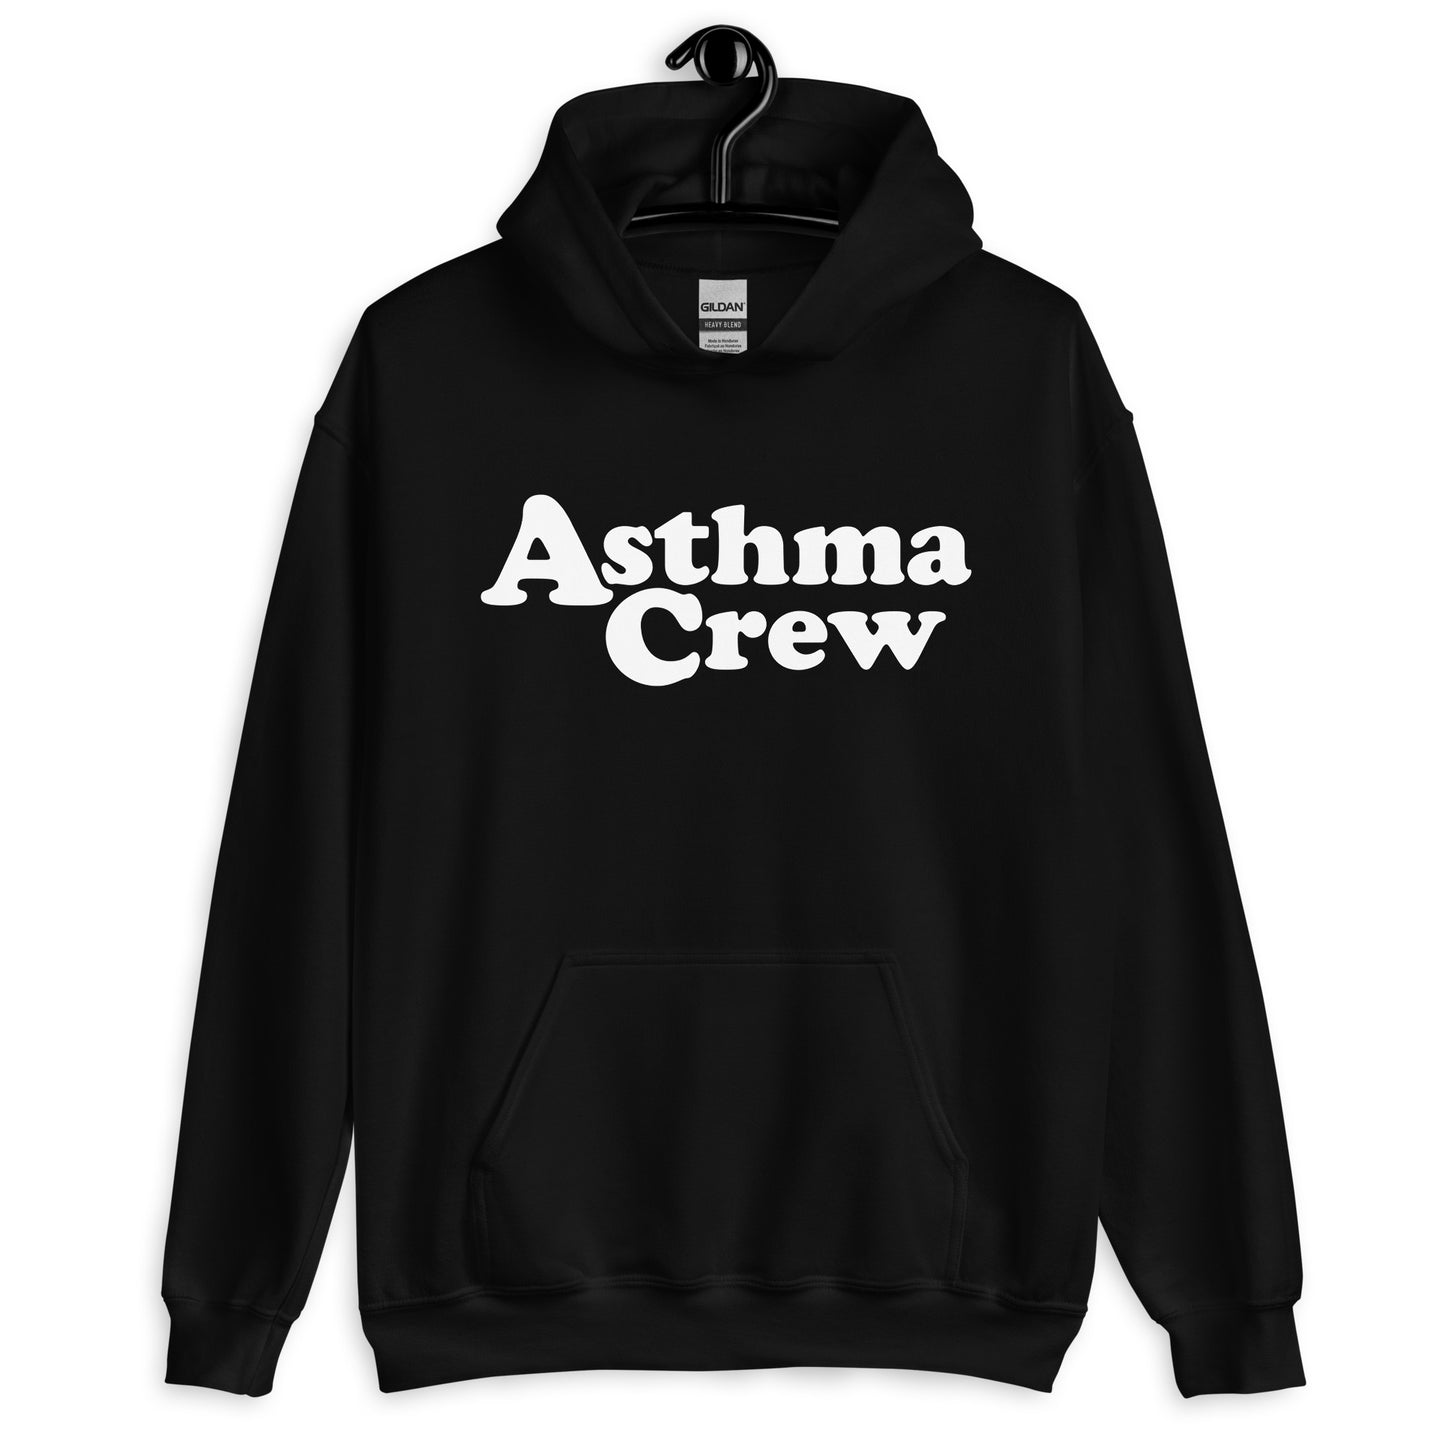 Asthma Crew - Unisex Hoodie